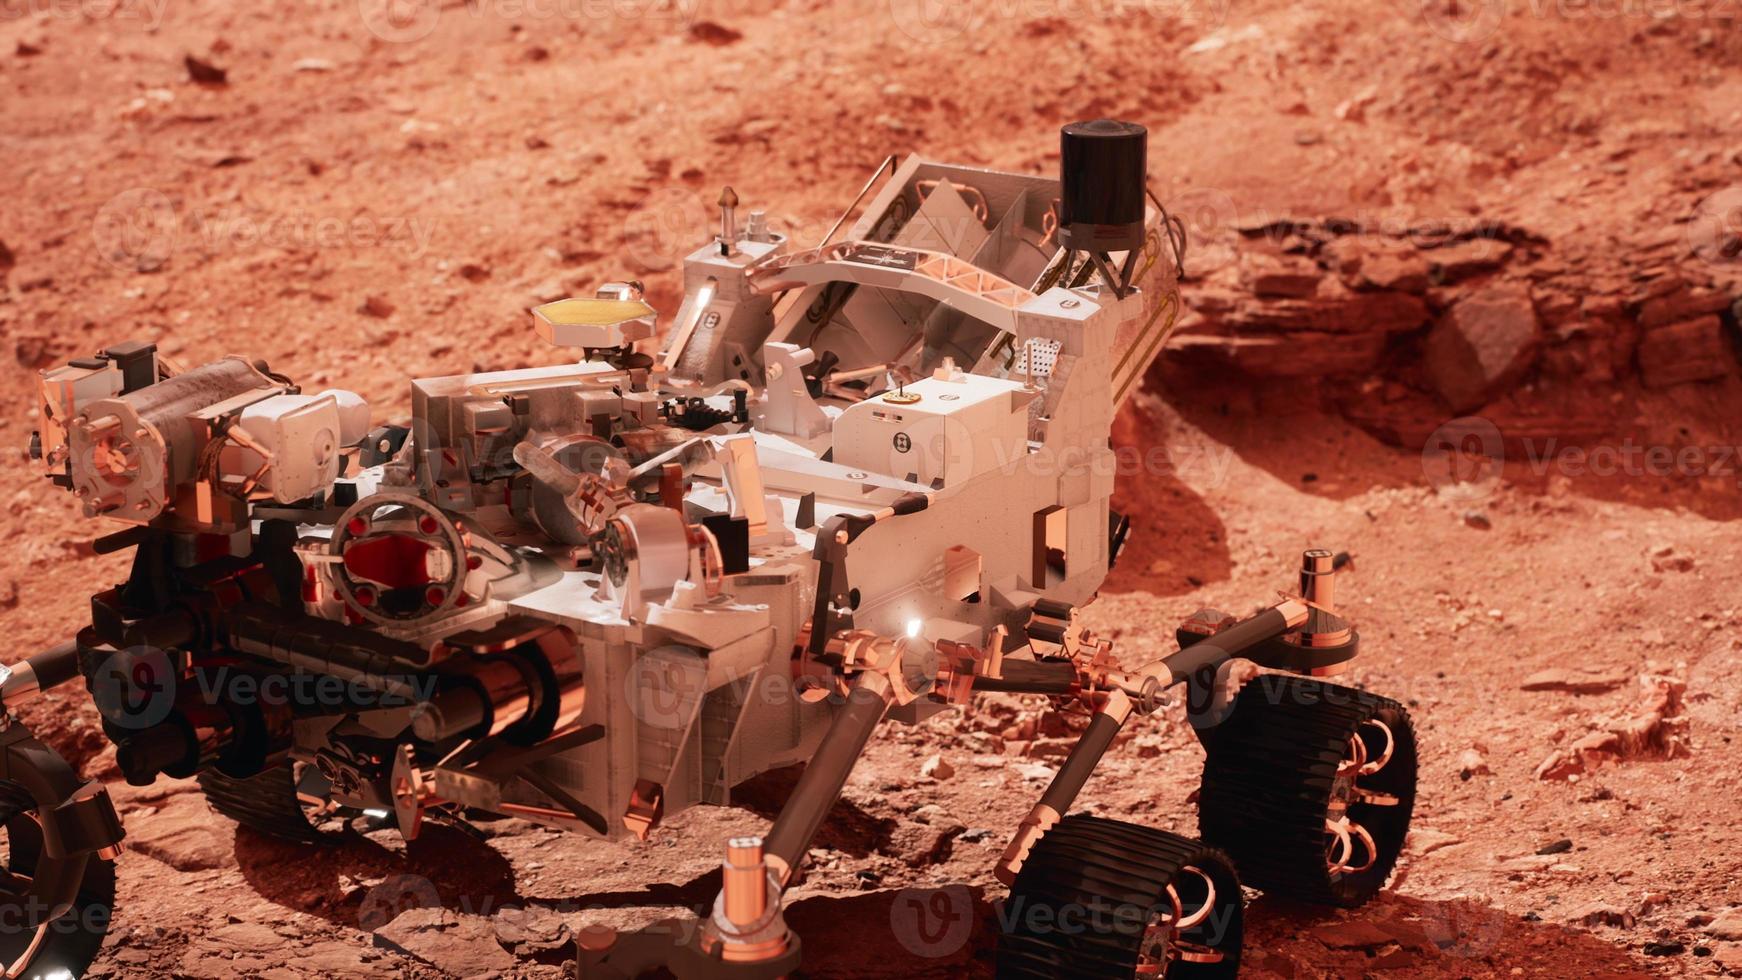 mars rover ausdauer erkundet den roten planeten. von der nasa bereitgestellte elemente. foto